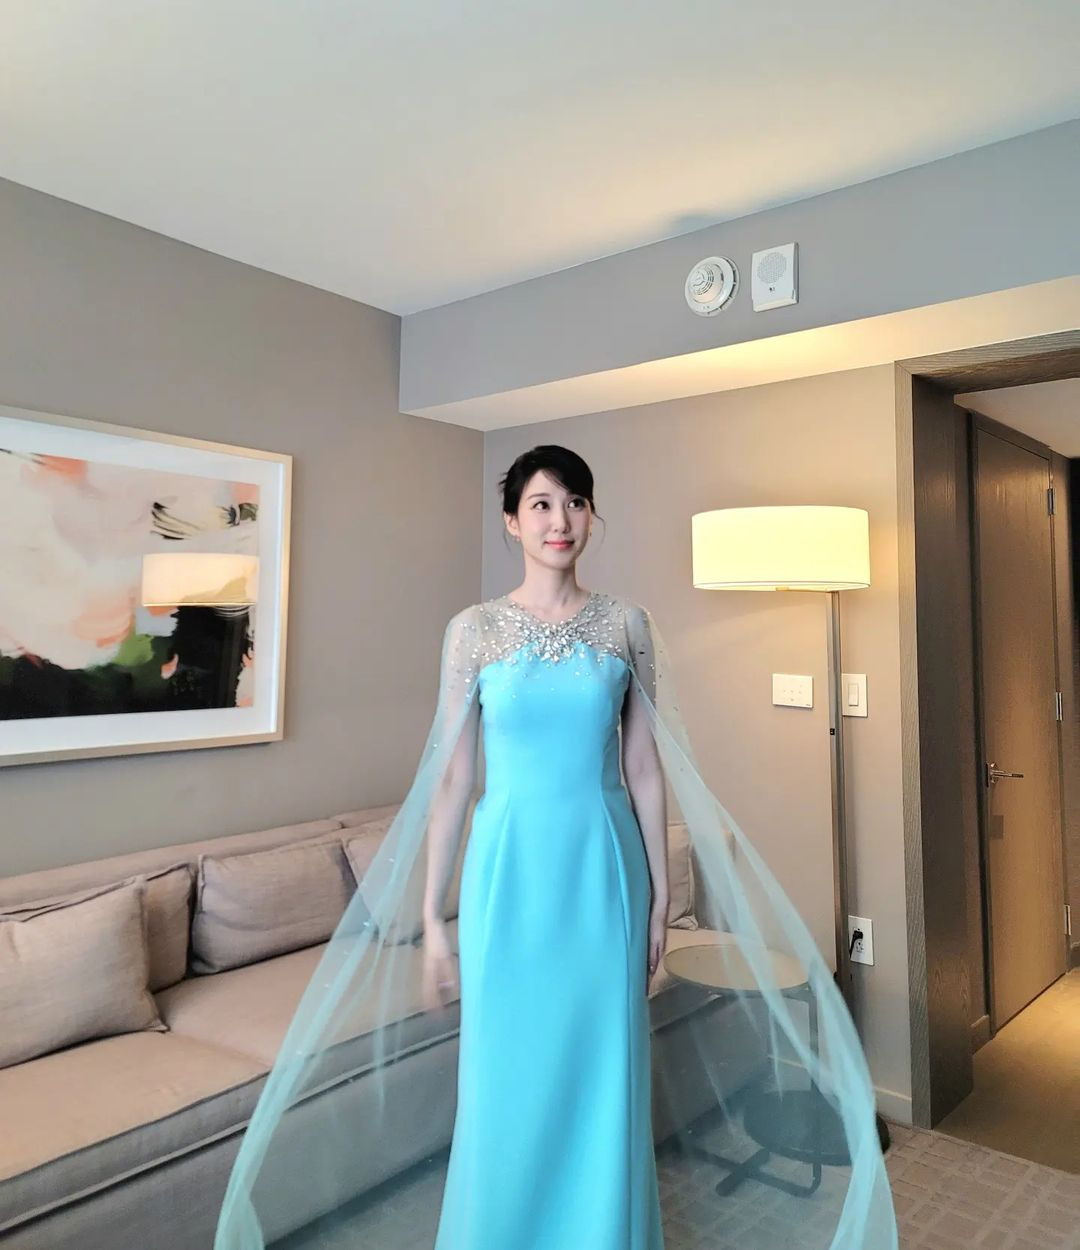 「ウ・ヨンウがエルサに」…パク・ウンビン、米授賞式で水色の「雪の女王」ドレス